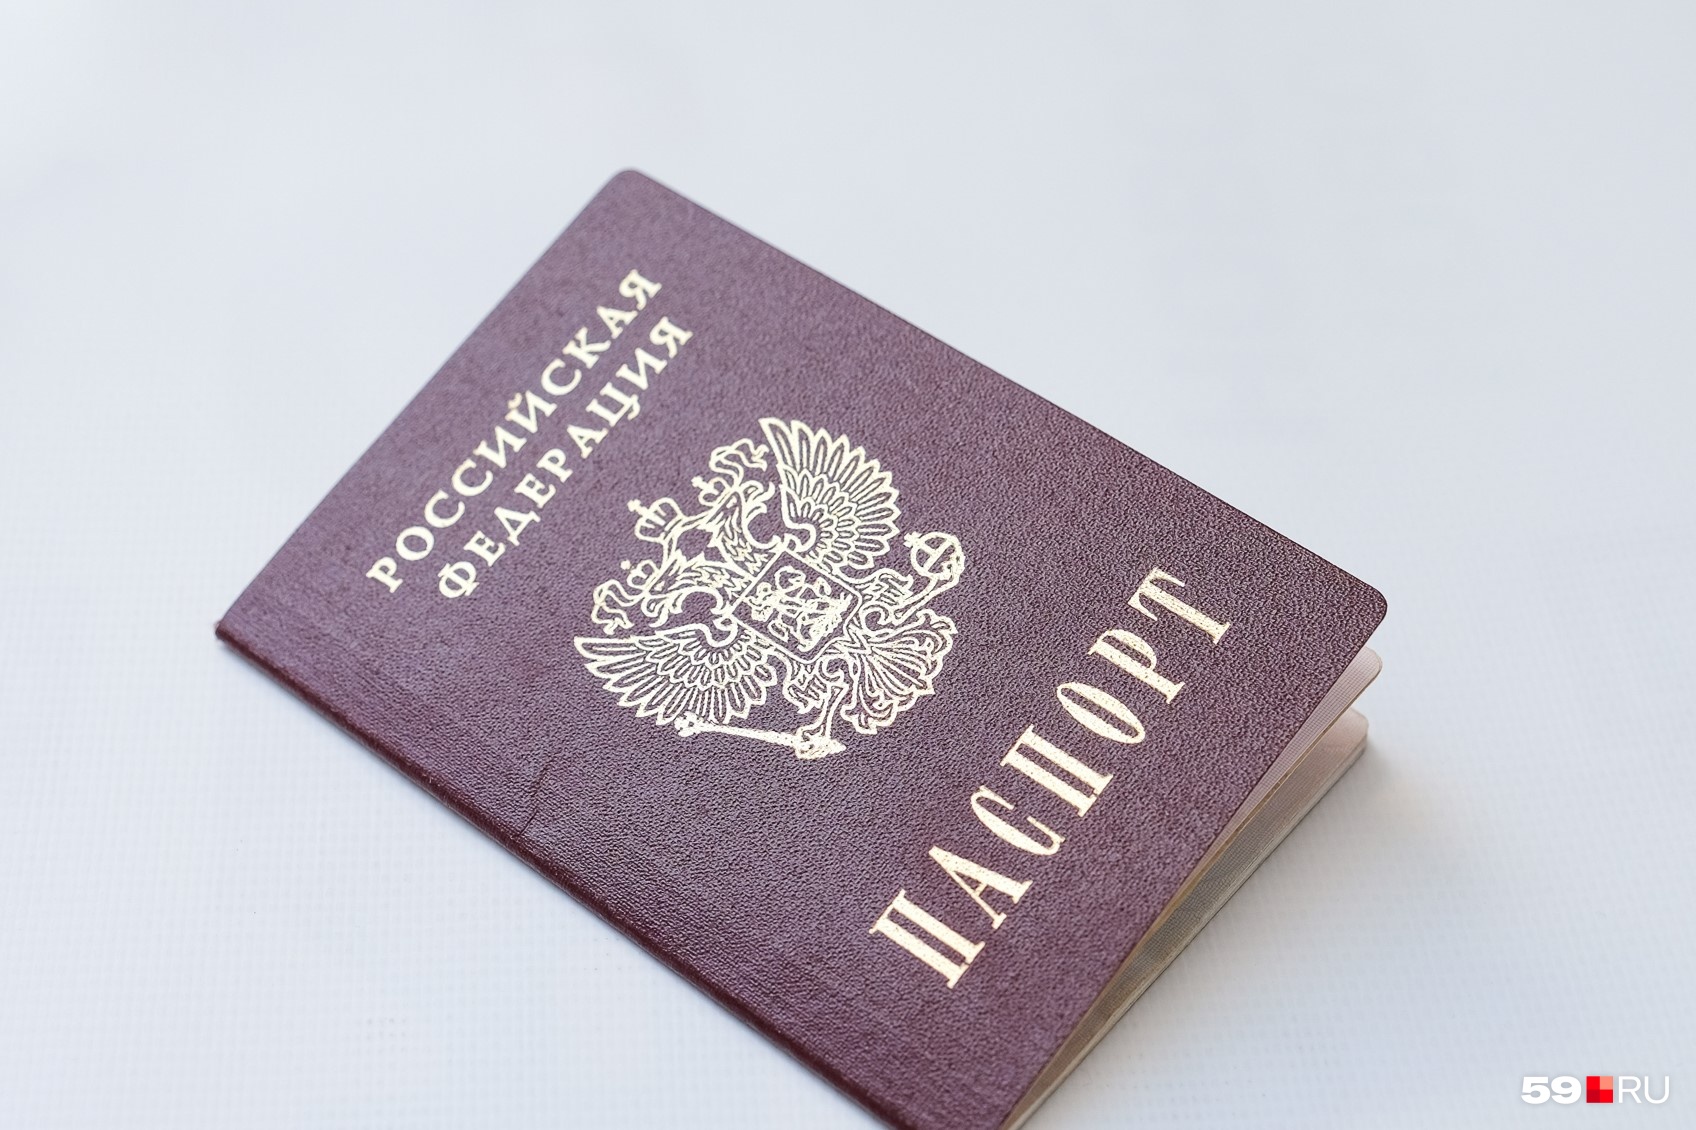 Достаточно взять с собой только паспорт. Вдобавок нужно лишь будет написать заявление